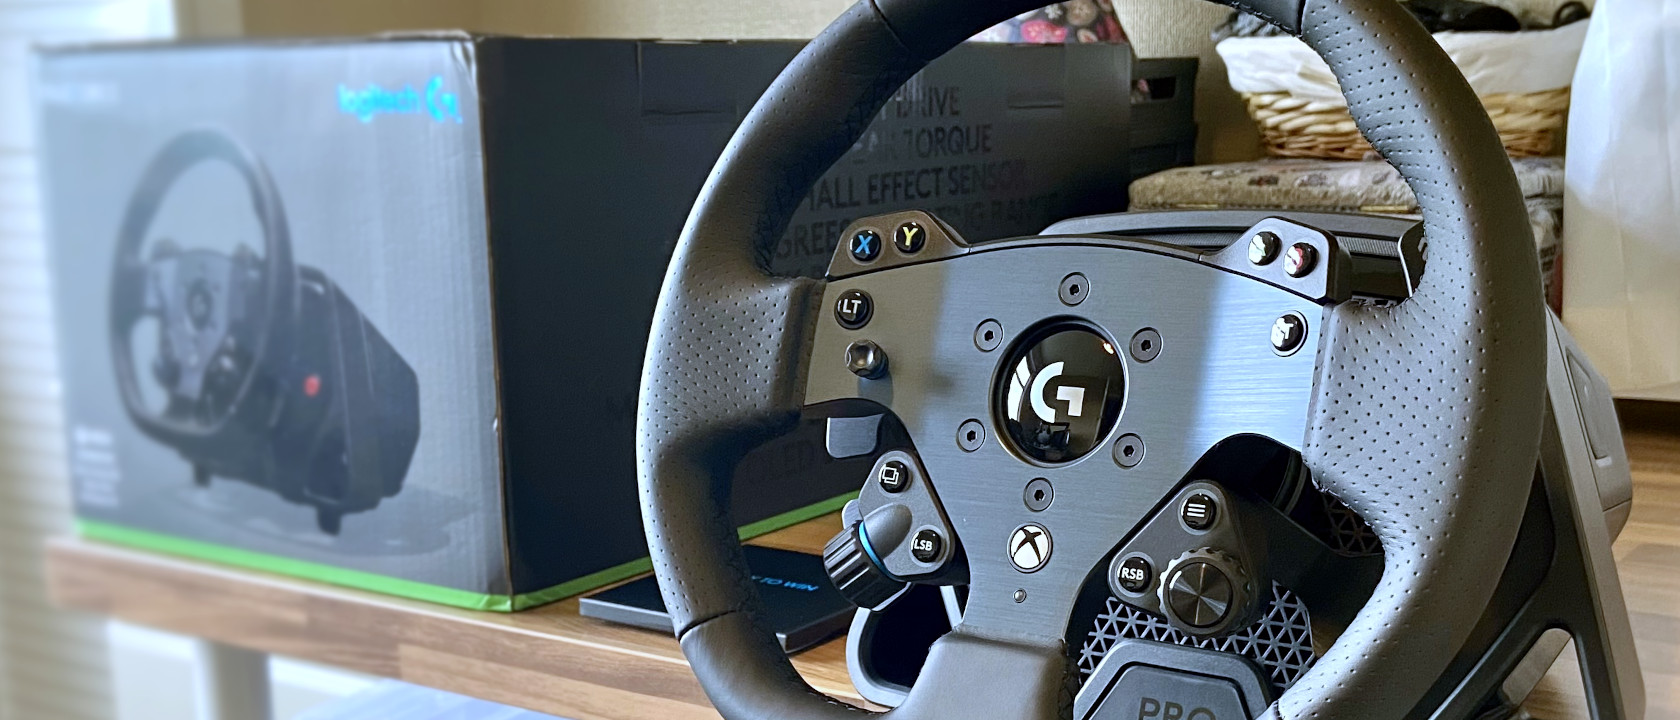 Logitech G25 Racing Wheel review: Logitech G25 Racing Wheel - CNET